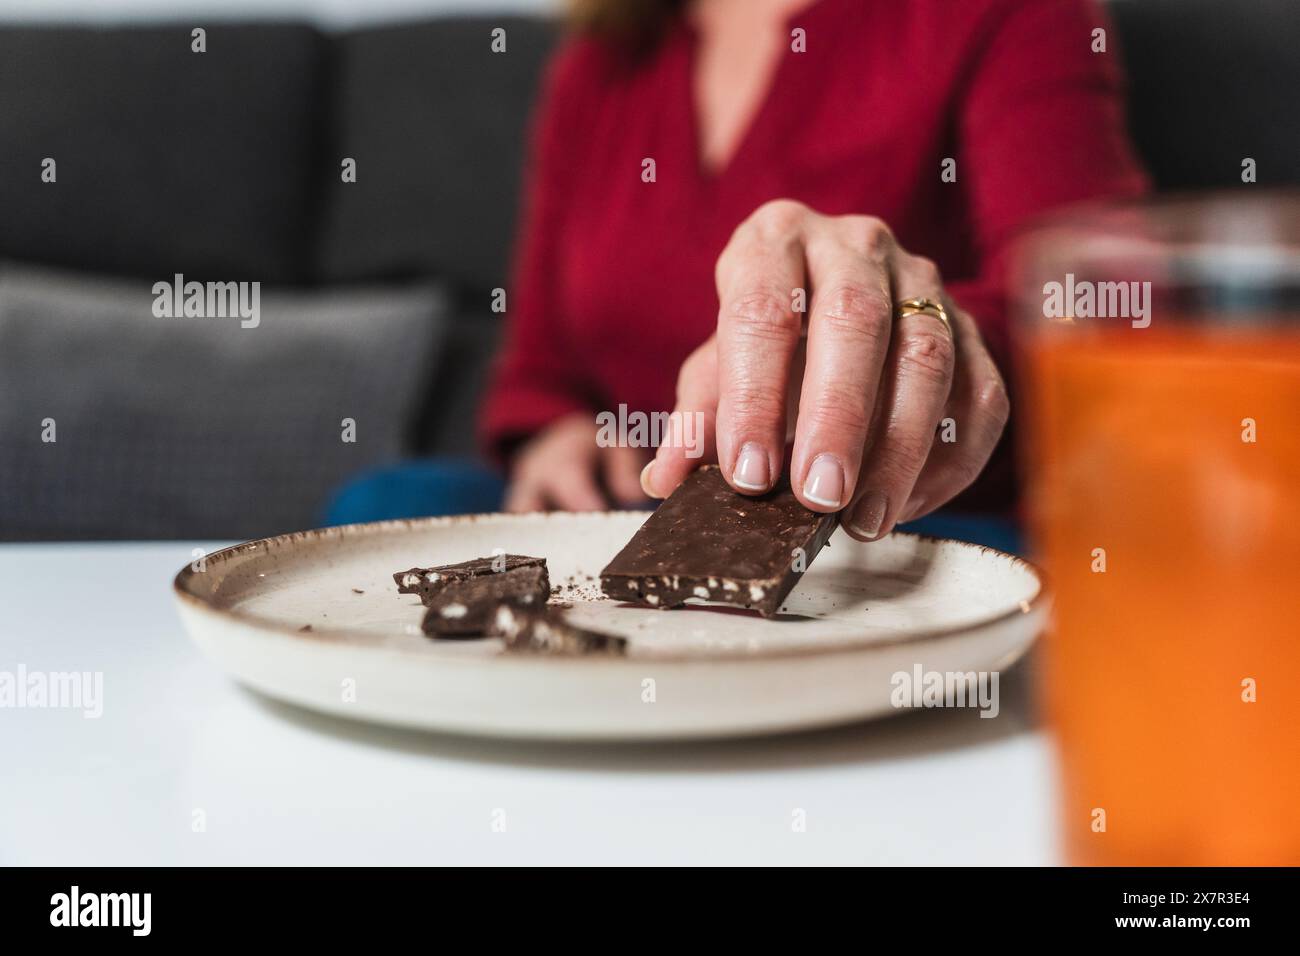 Gros plan de la main d'une femme sélectionnant un morceau de chocolat dans une assiette, un remède rapide pour l'hypoglycémie, montrant une gestion diététique pratique à la veille Banque D'Images